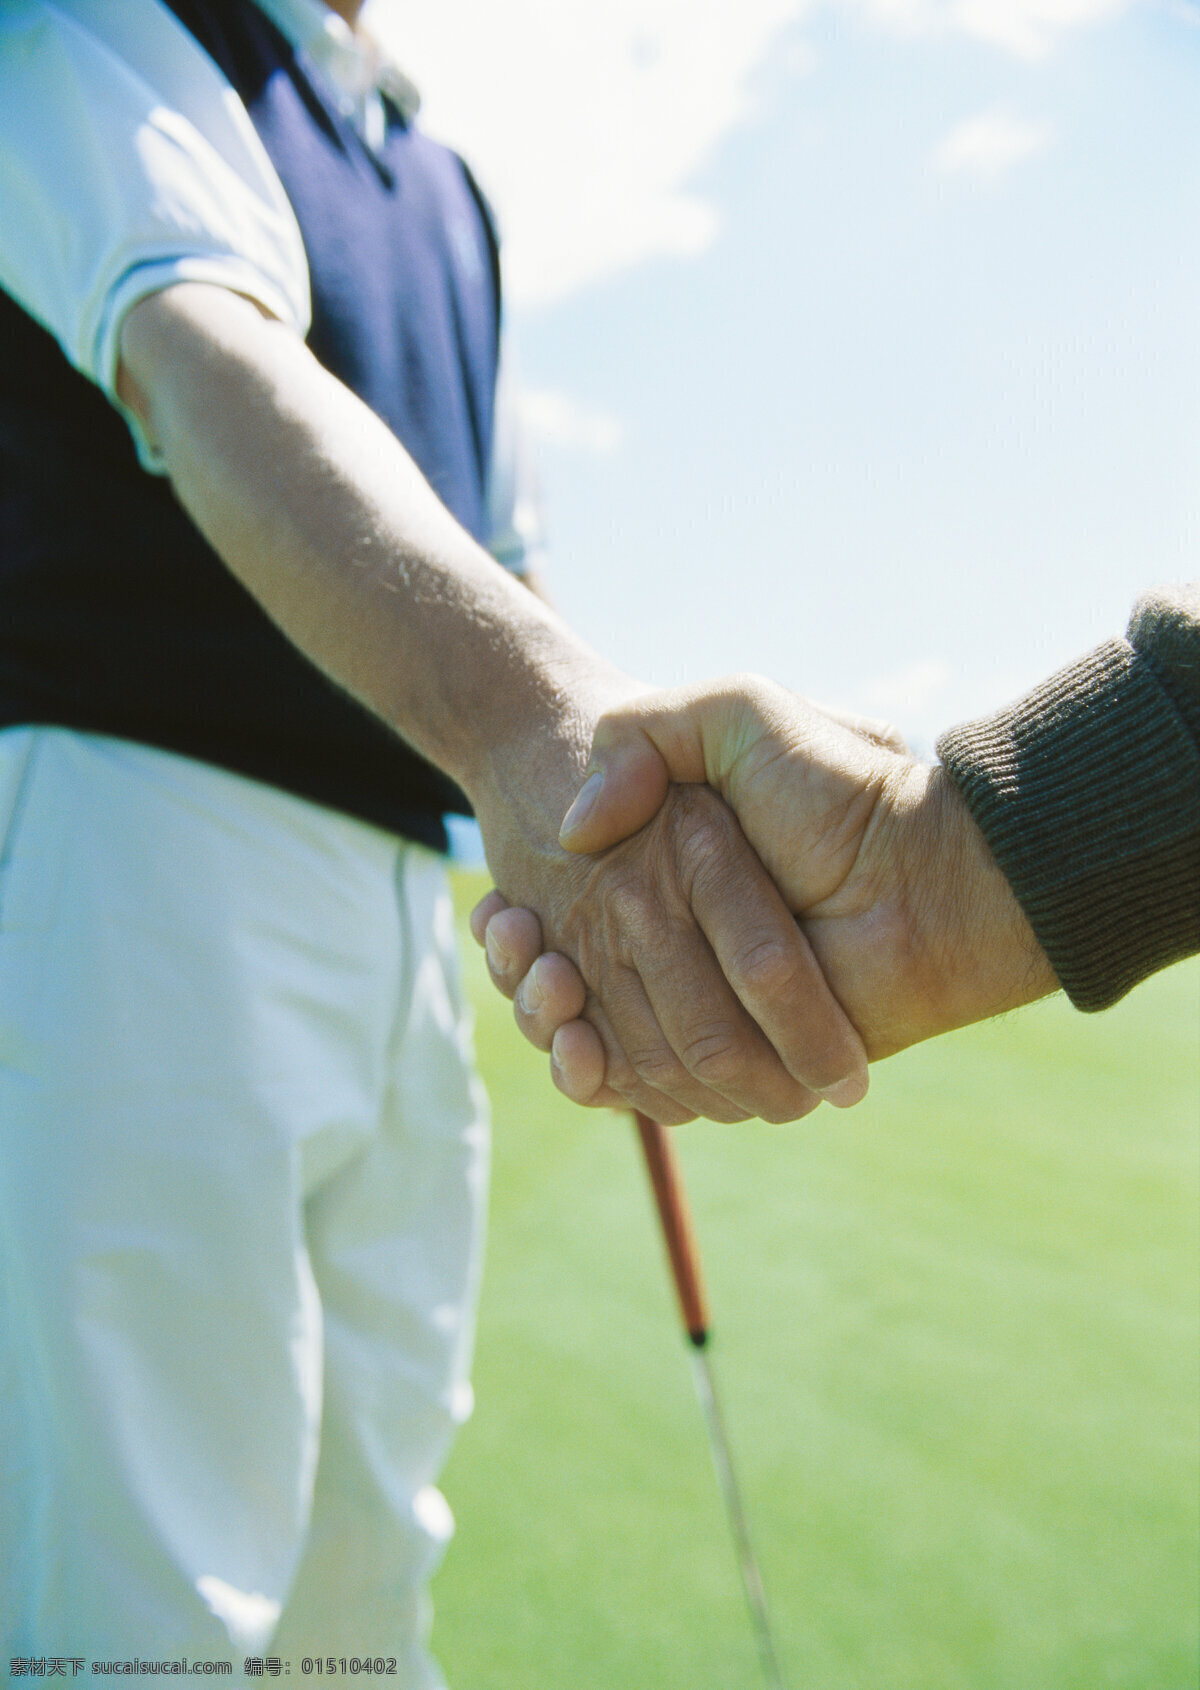 球场 上 两个 人 握手 特写 天空 人物 两个人 手势 手 合作 友谊 球杆 绿草地 草地 草坪 高尔夫 高尔夫球 高尔夫球场 休闲 娱乐 运动 高清图片 体育运动 生活百科